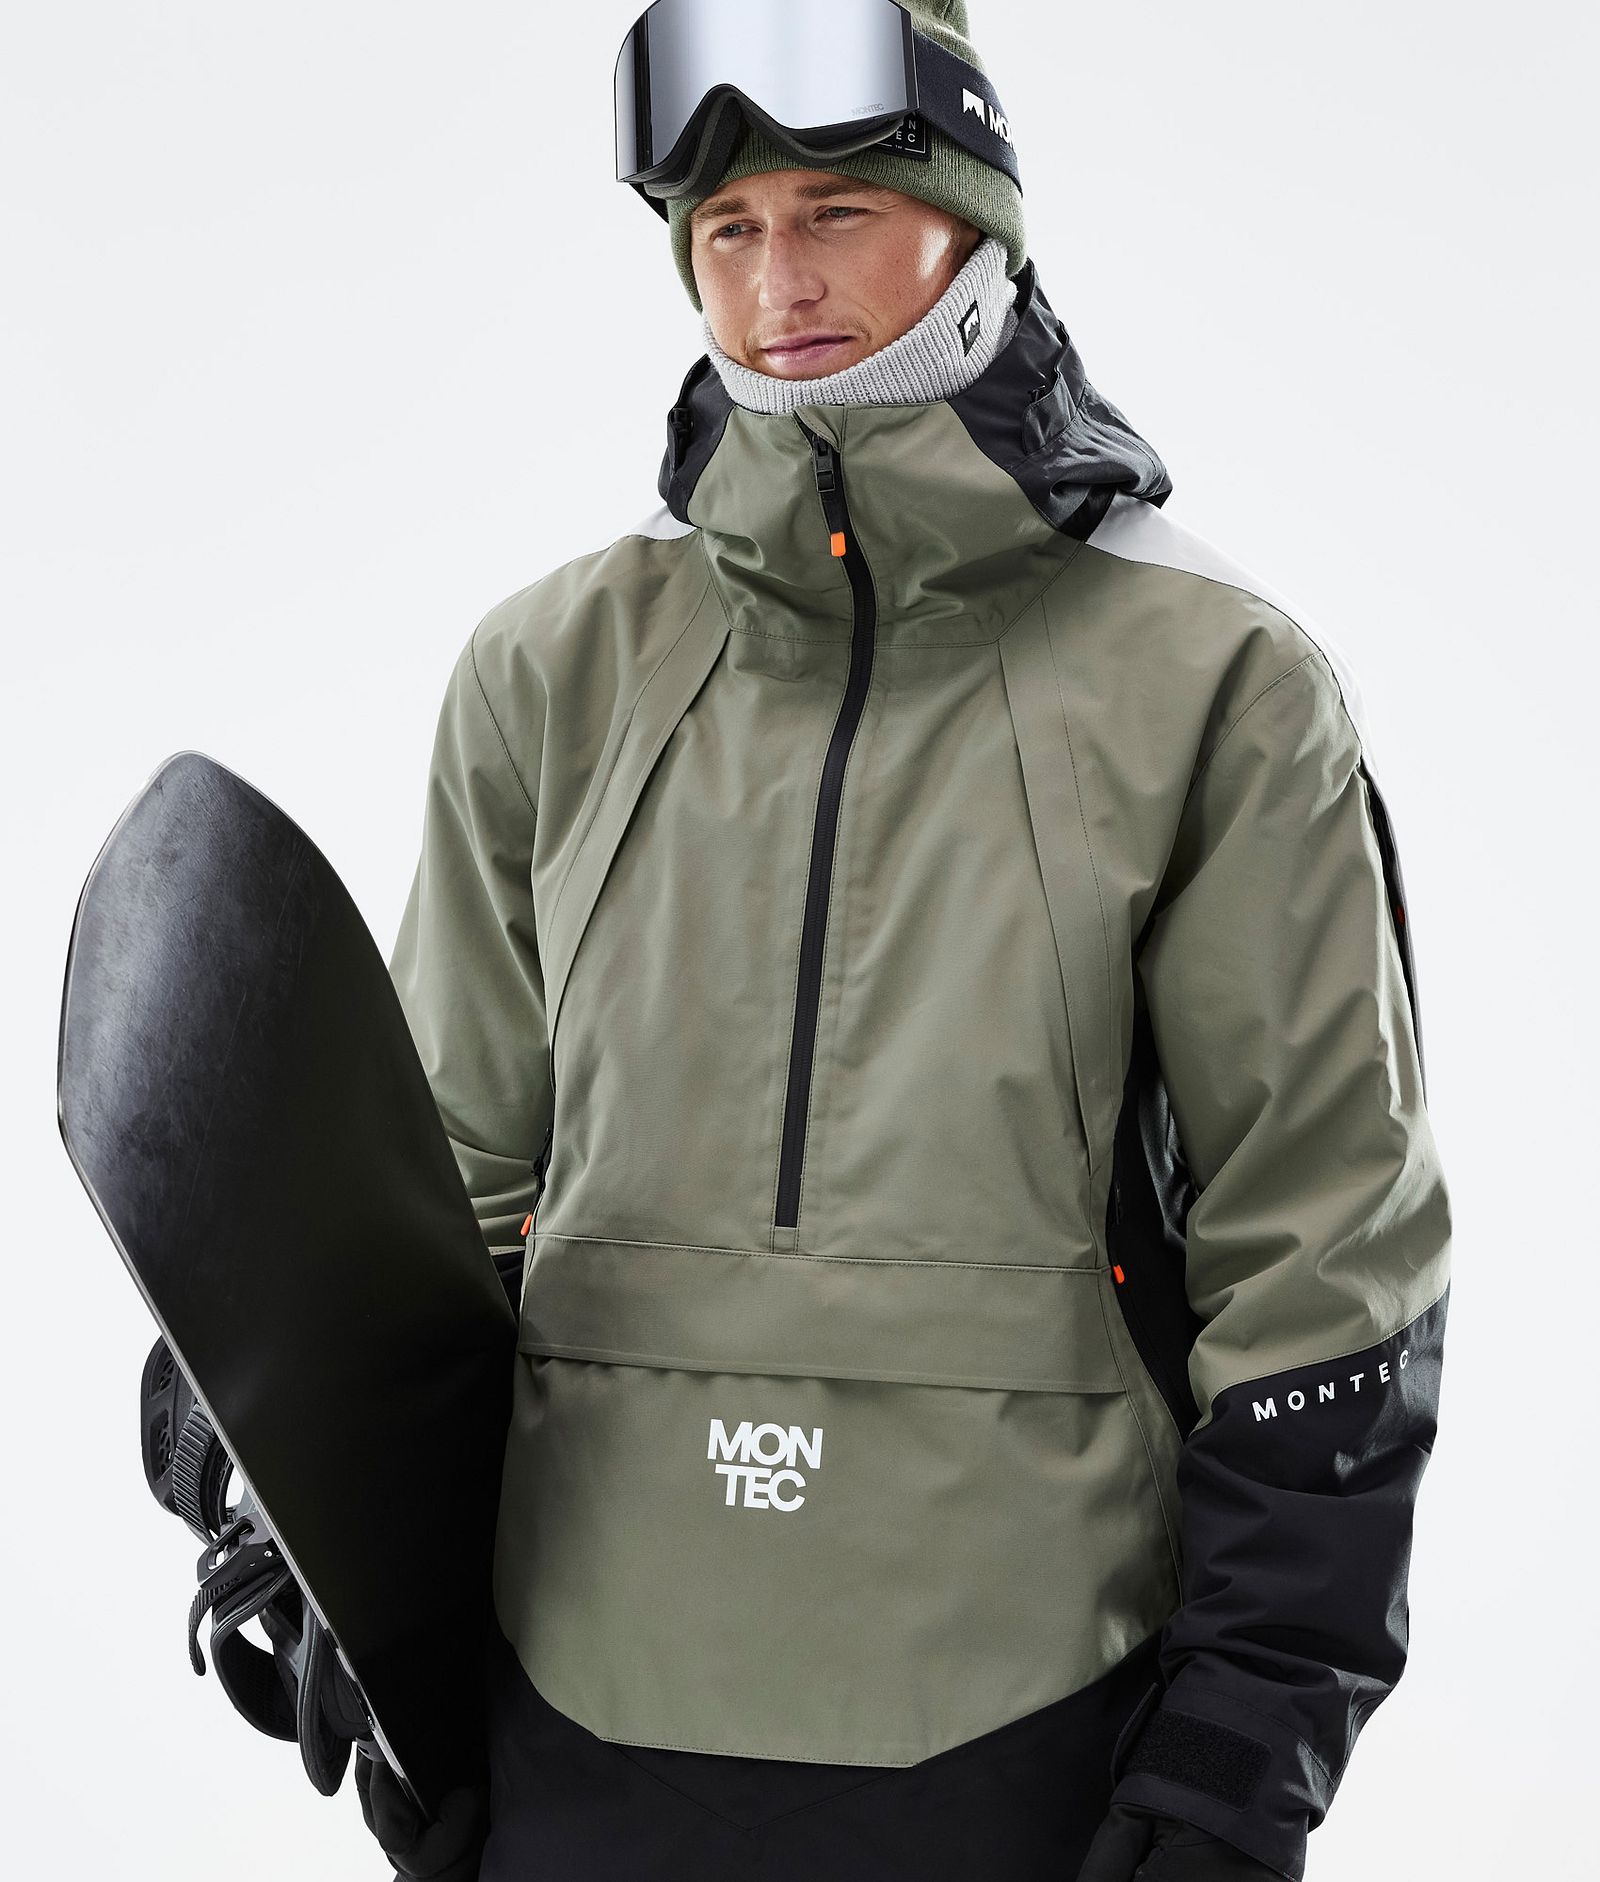 Montec Apex Chaqueta Snowboard Hombre Greenish/Black/Light Grey